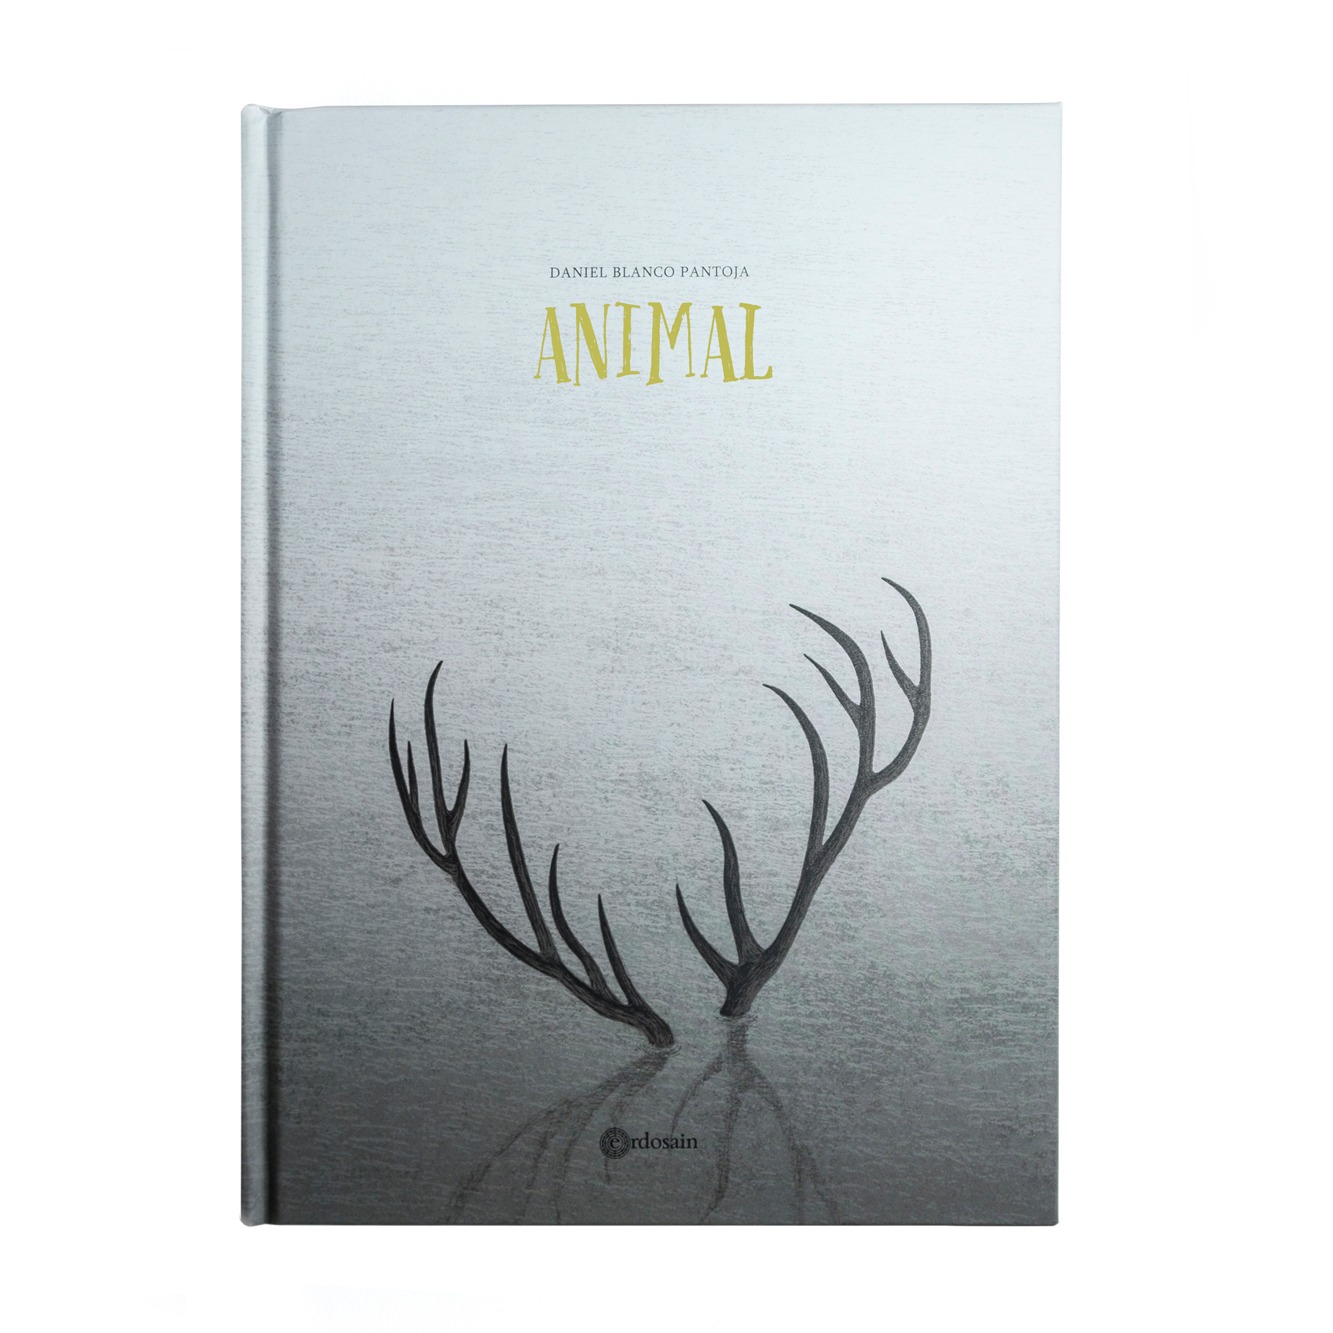 Un libro-álbum de Blanco Pantoja Animal es una biografía anónima de la historia de la vida. Es una letanía sobre las desdichas y alegrías que nos suceden, y que no podemos conmensurar porque trascienden nuestra individualidad.